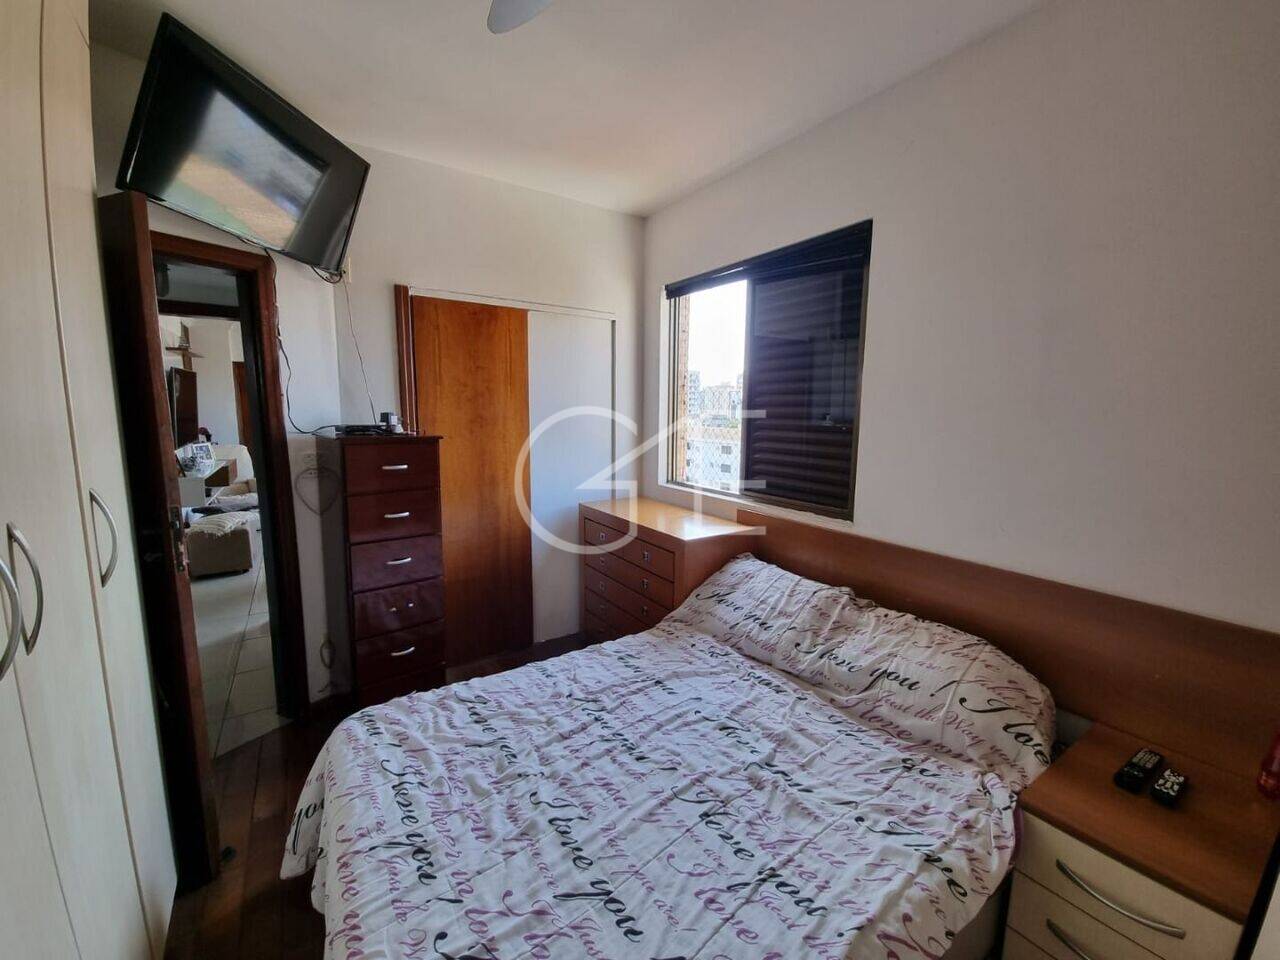 Apartamento Aparecida, Santos - SP